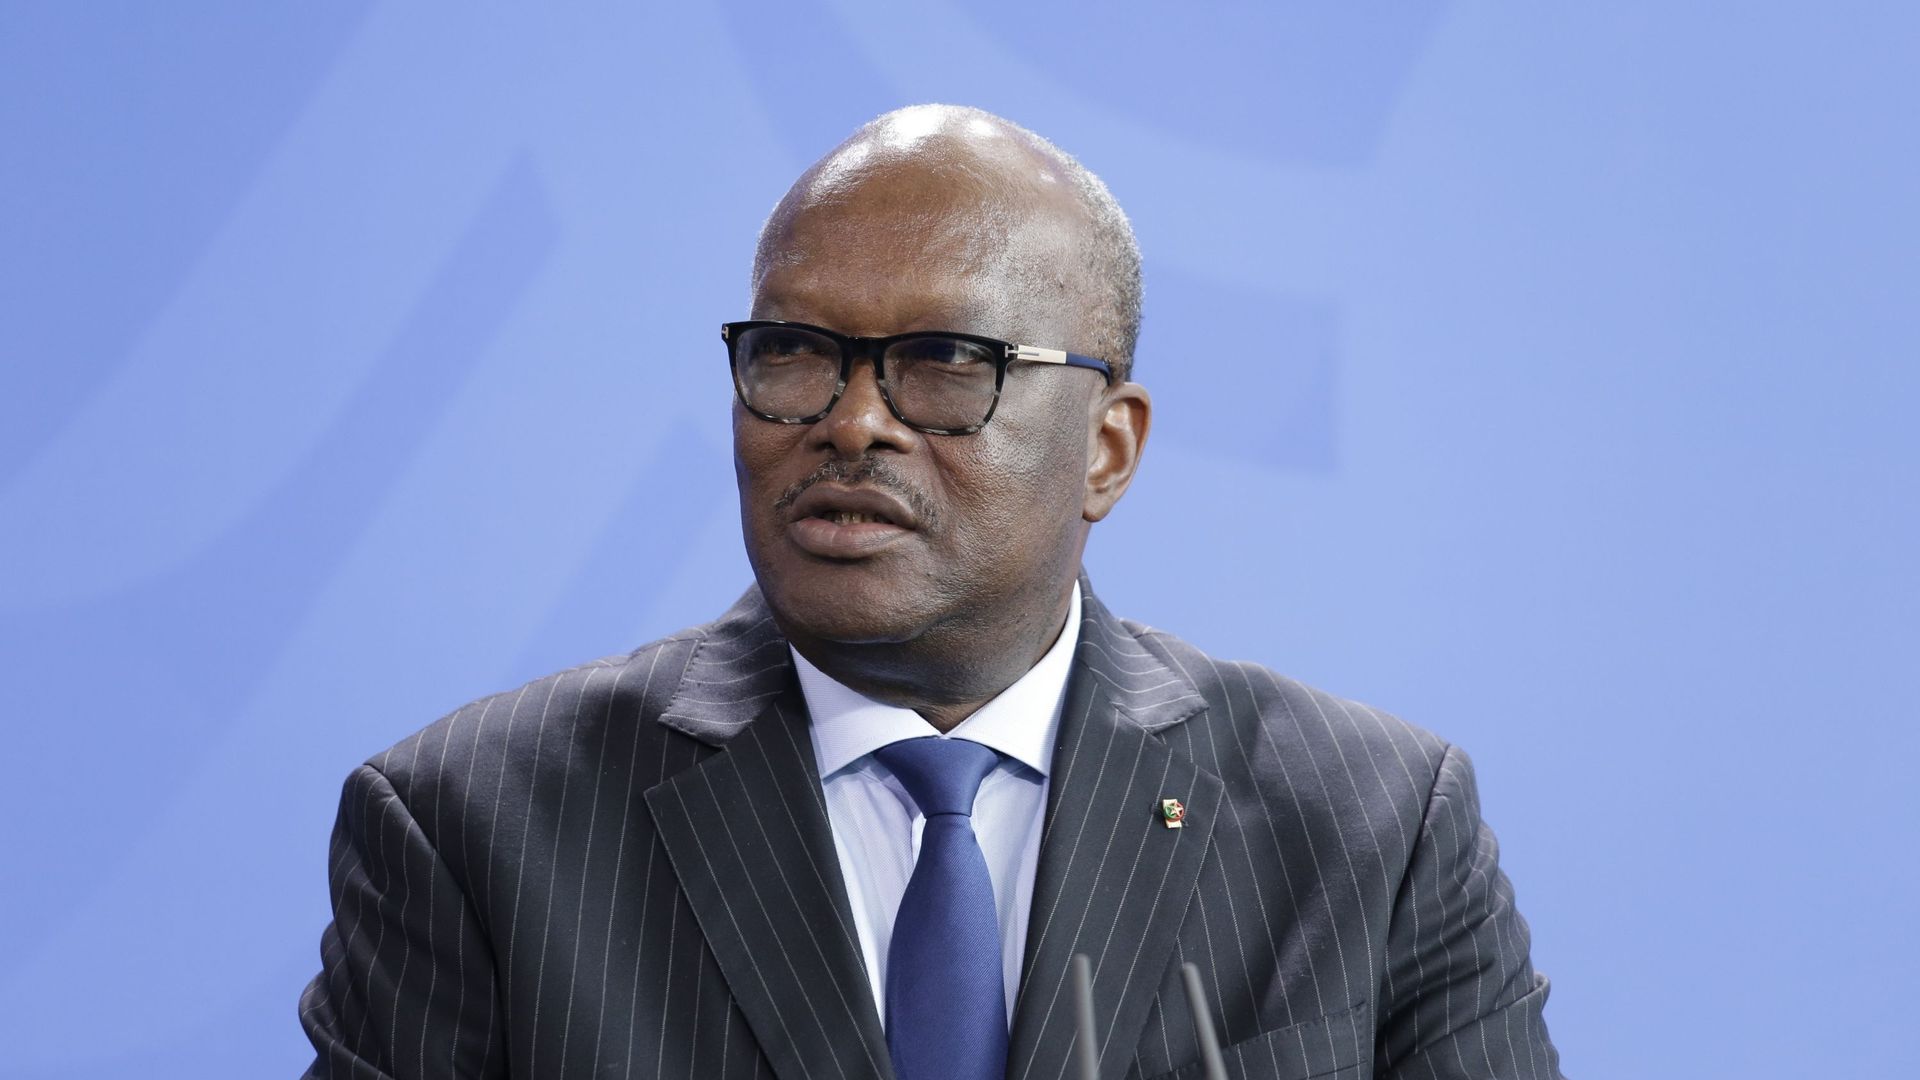 Le président du Burkina Faso, Roch Marc Kaboré, lors d’une visite en Allemagne en 2017